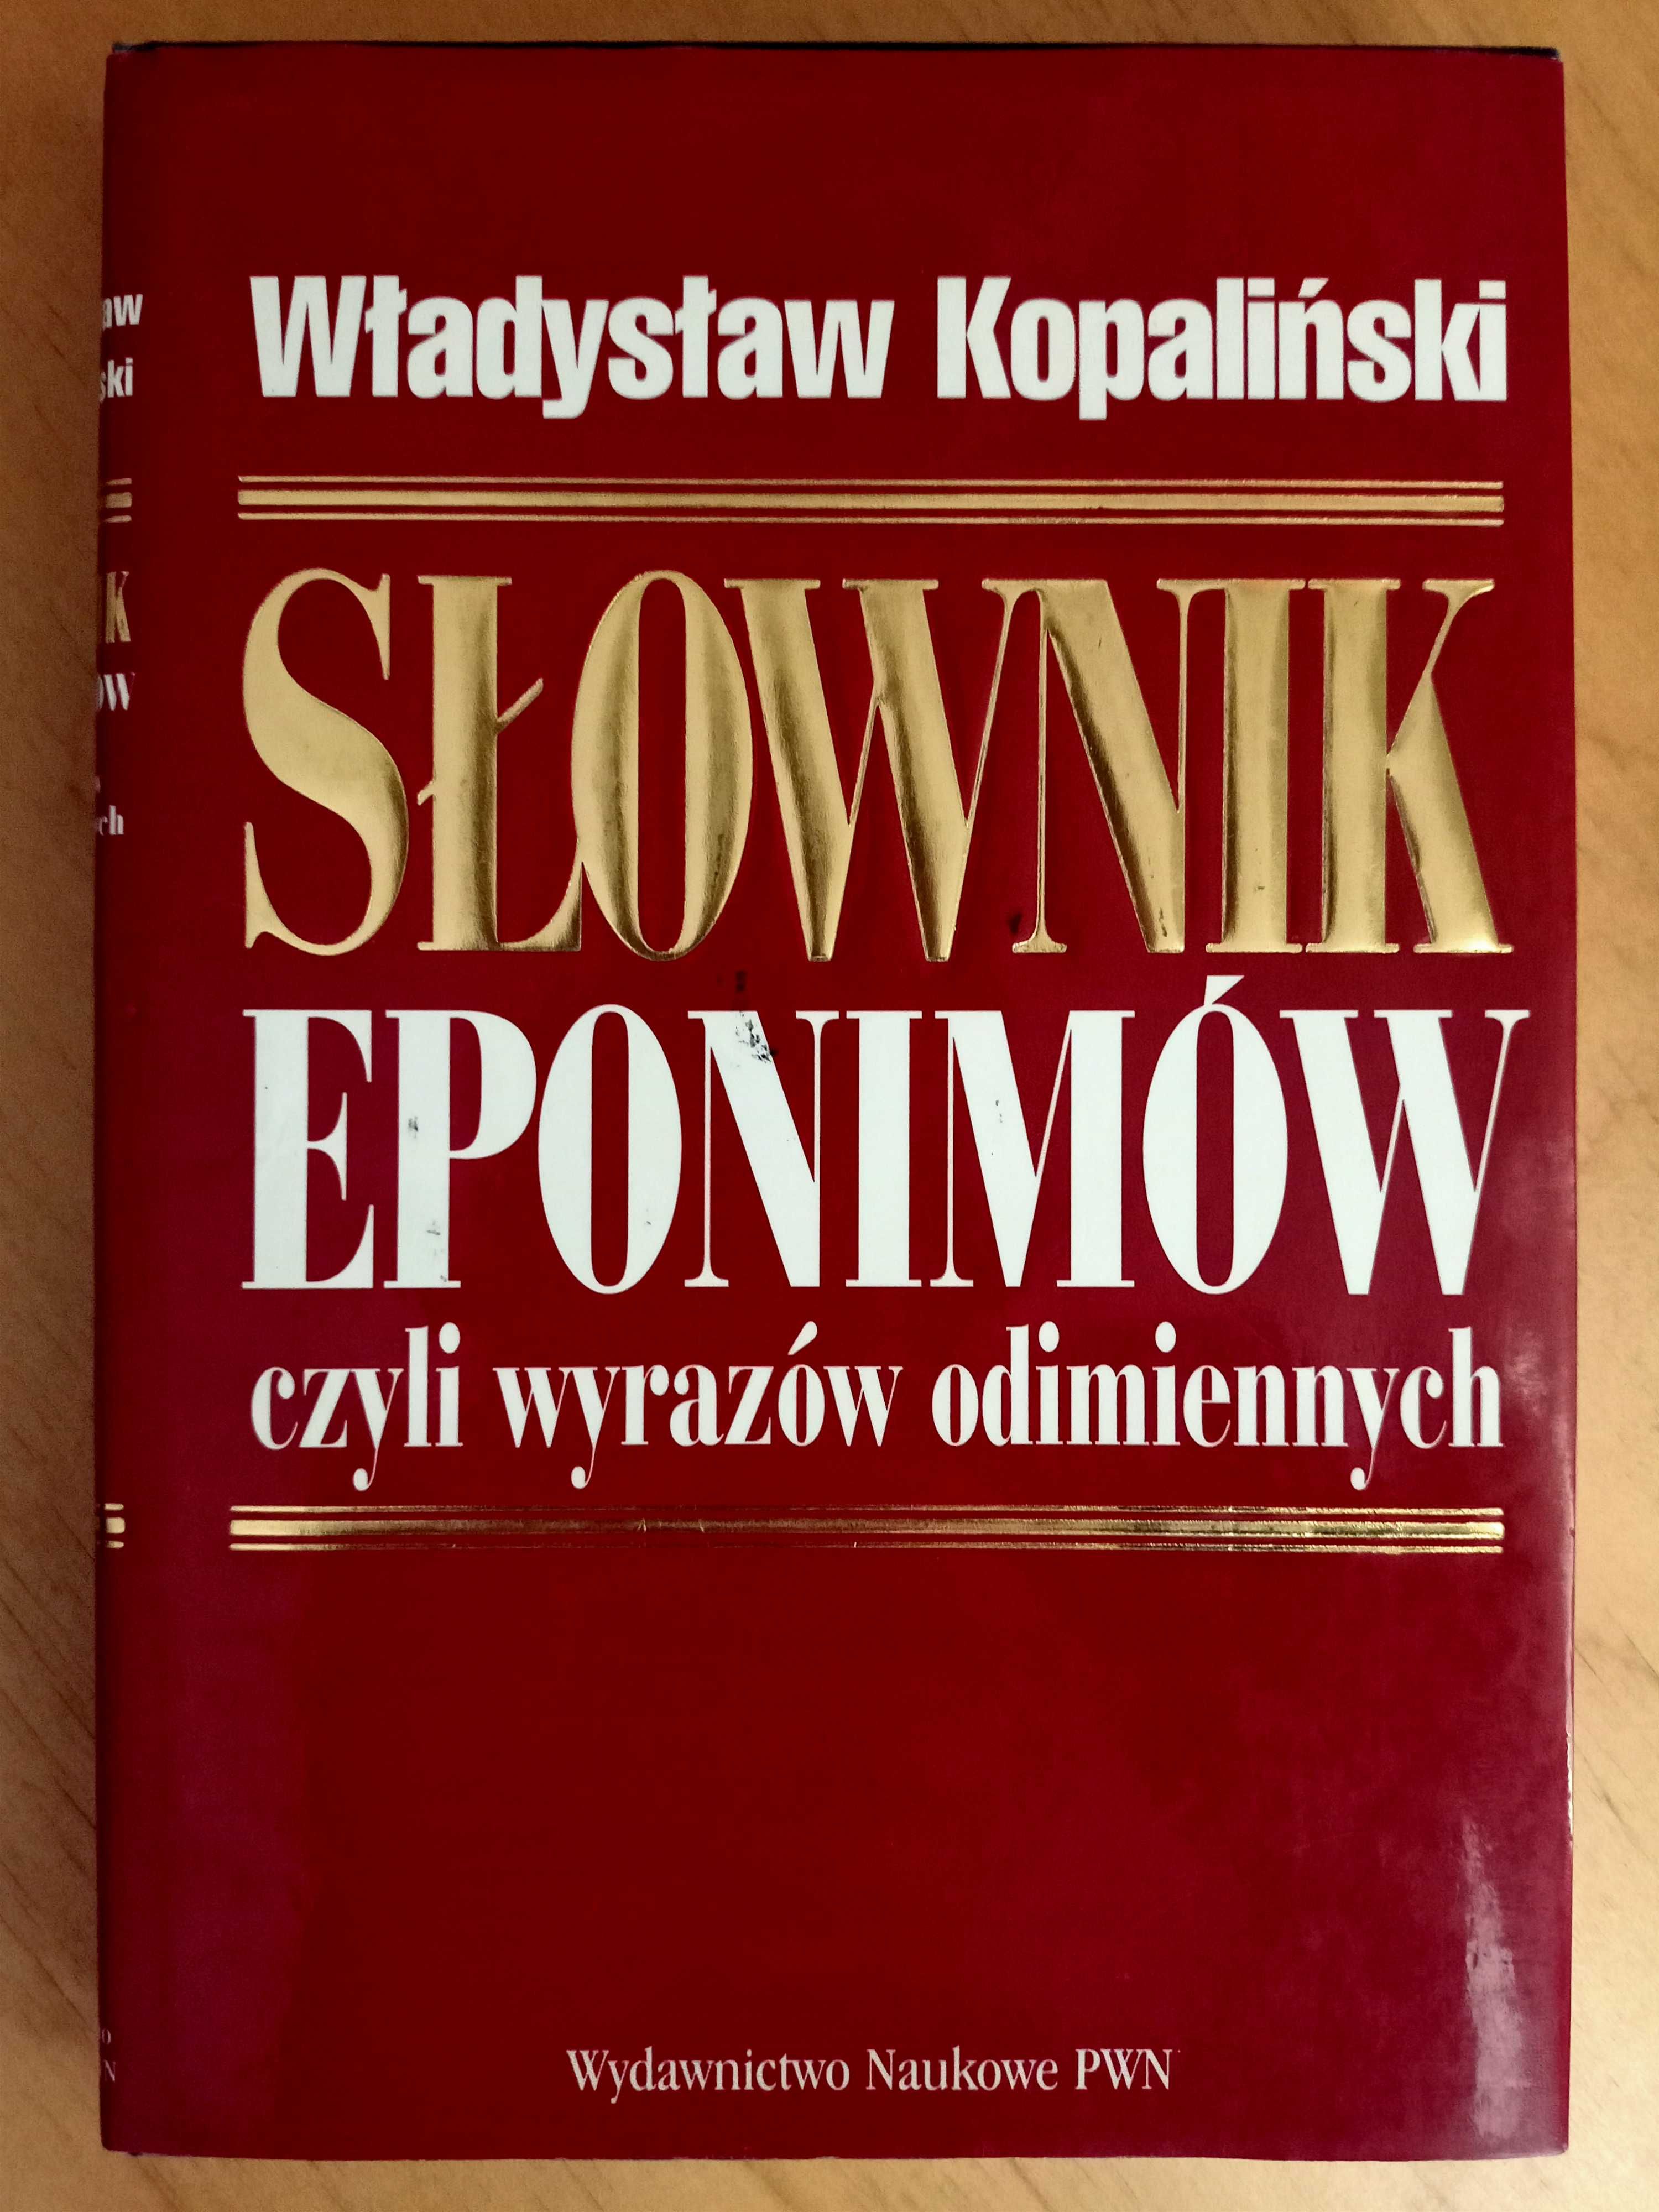 Słownik eponimów czyli wyrazów odimiennych, Władysław Kopaliński